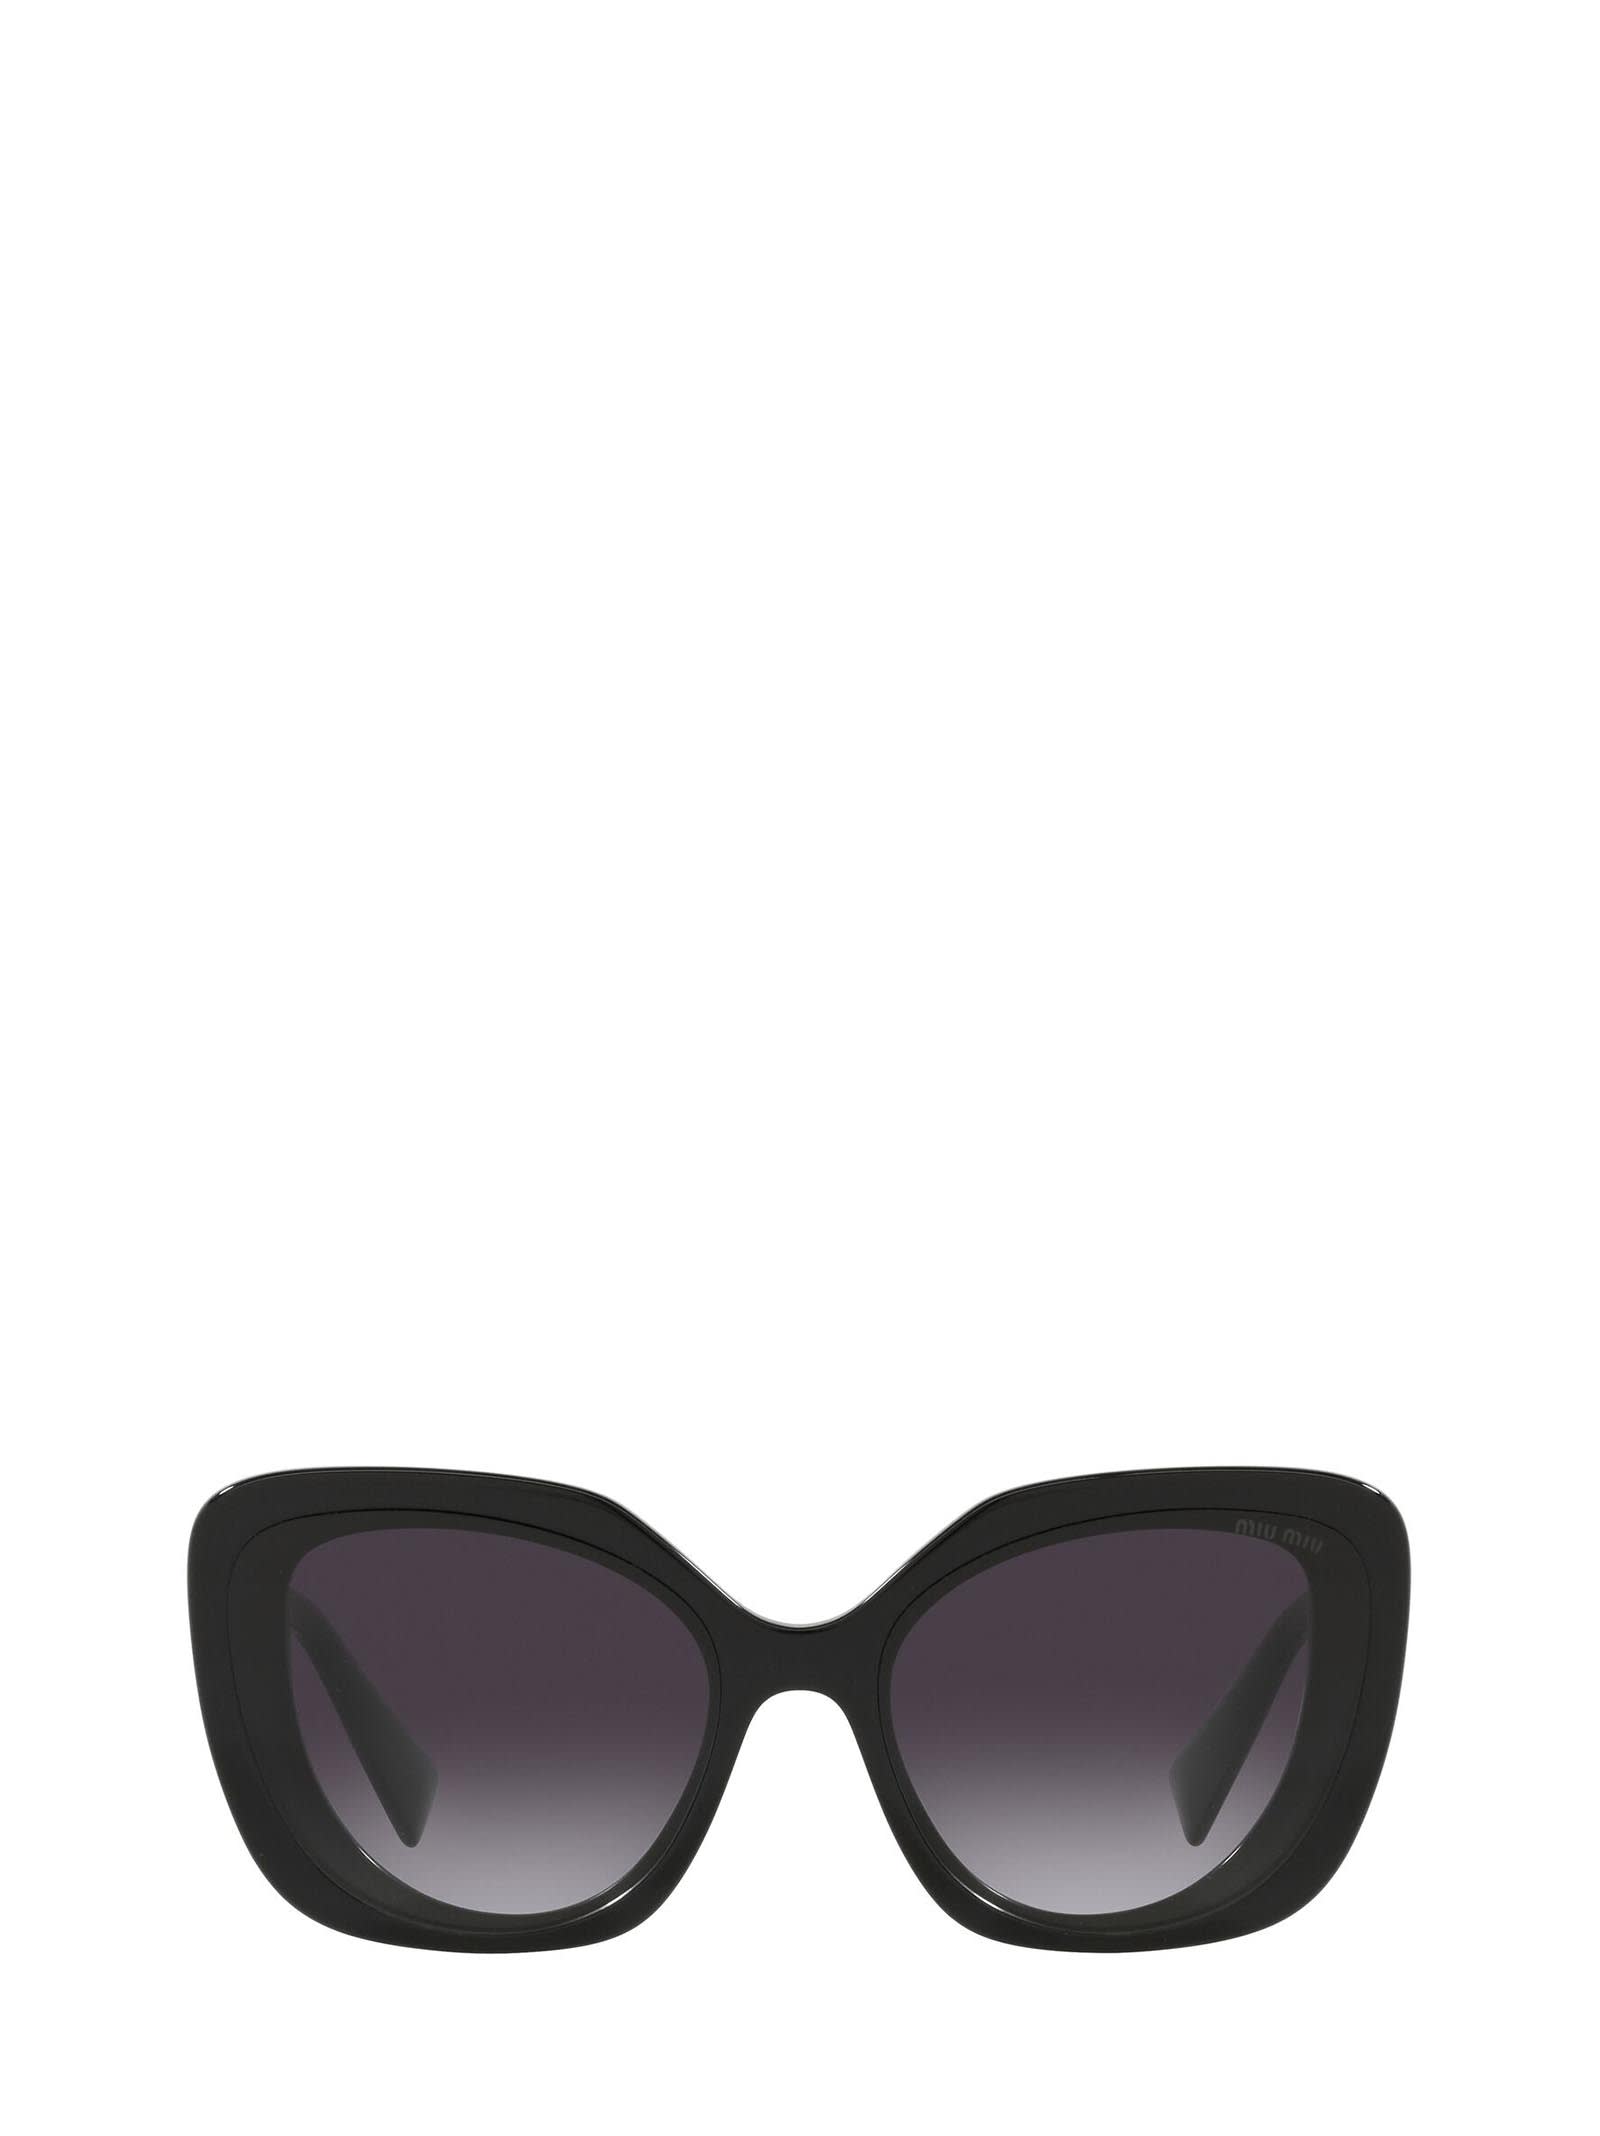 Miu Miu Eyewear Miu Miu Mu 06xs Crystal Black Sunglasses